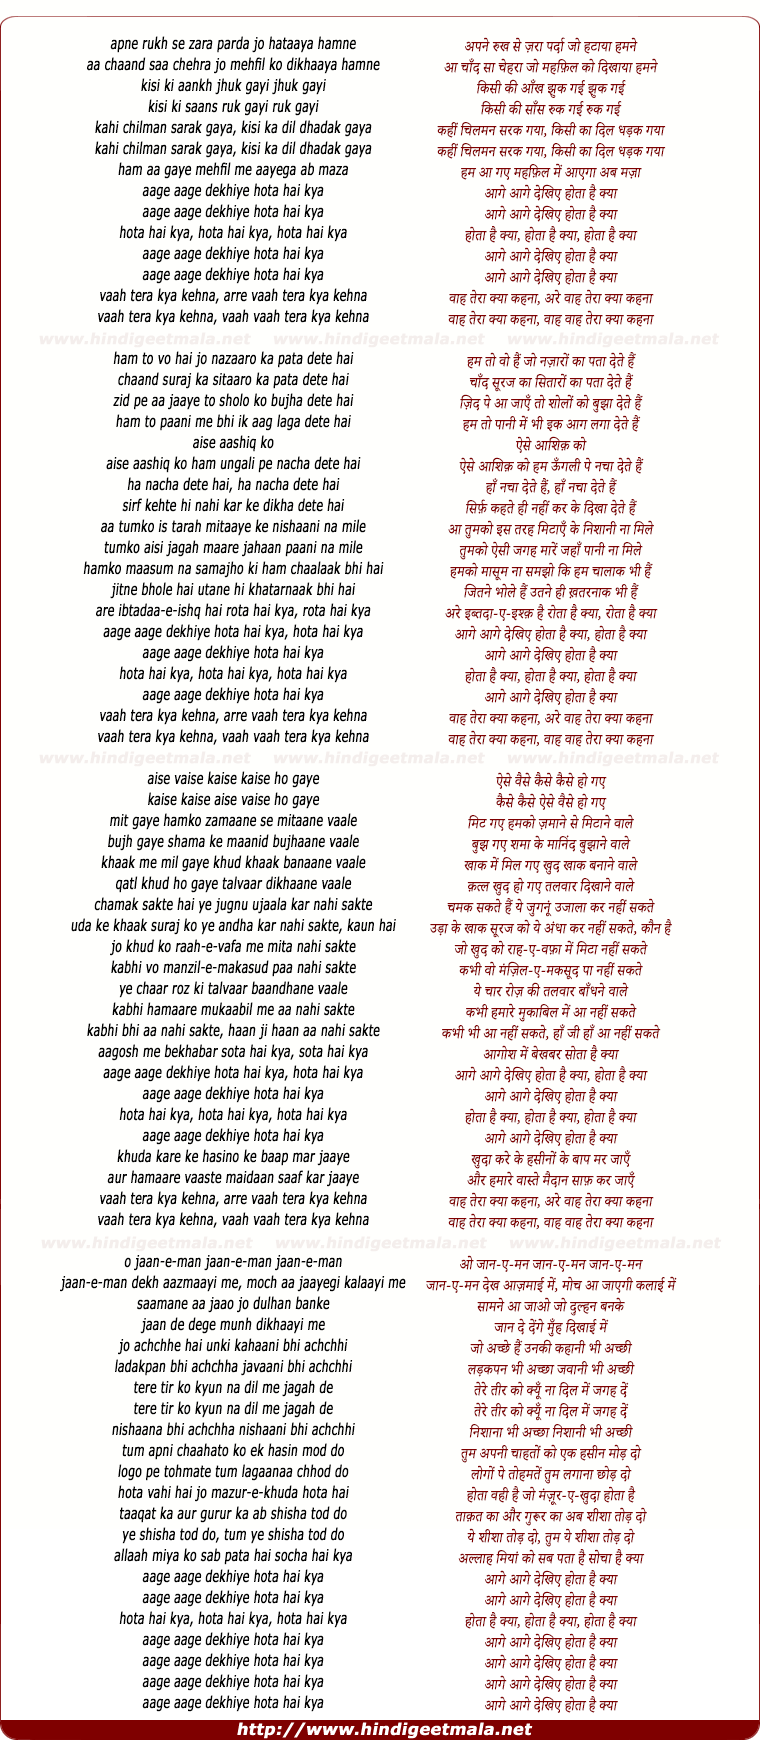 lyrics of song Vaah Teraa Kyaa Kahanaa